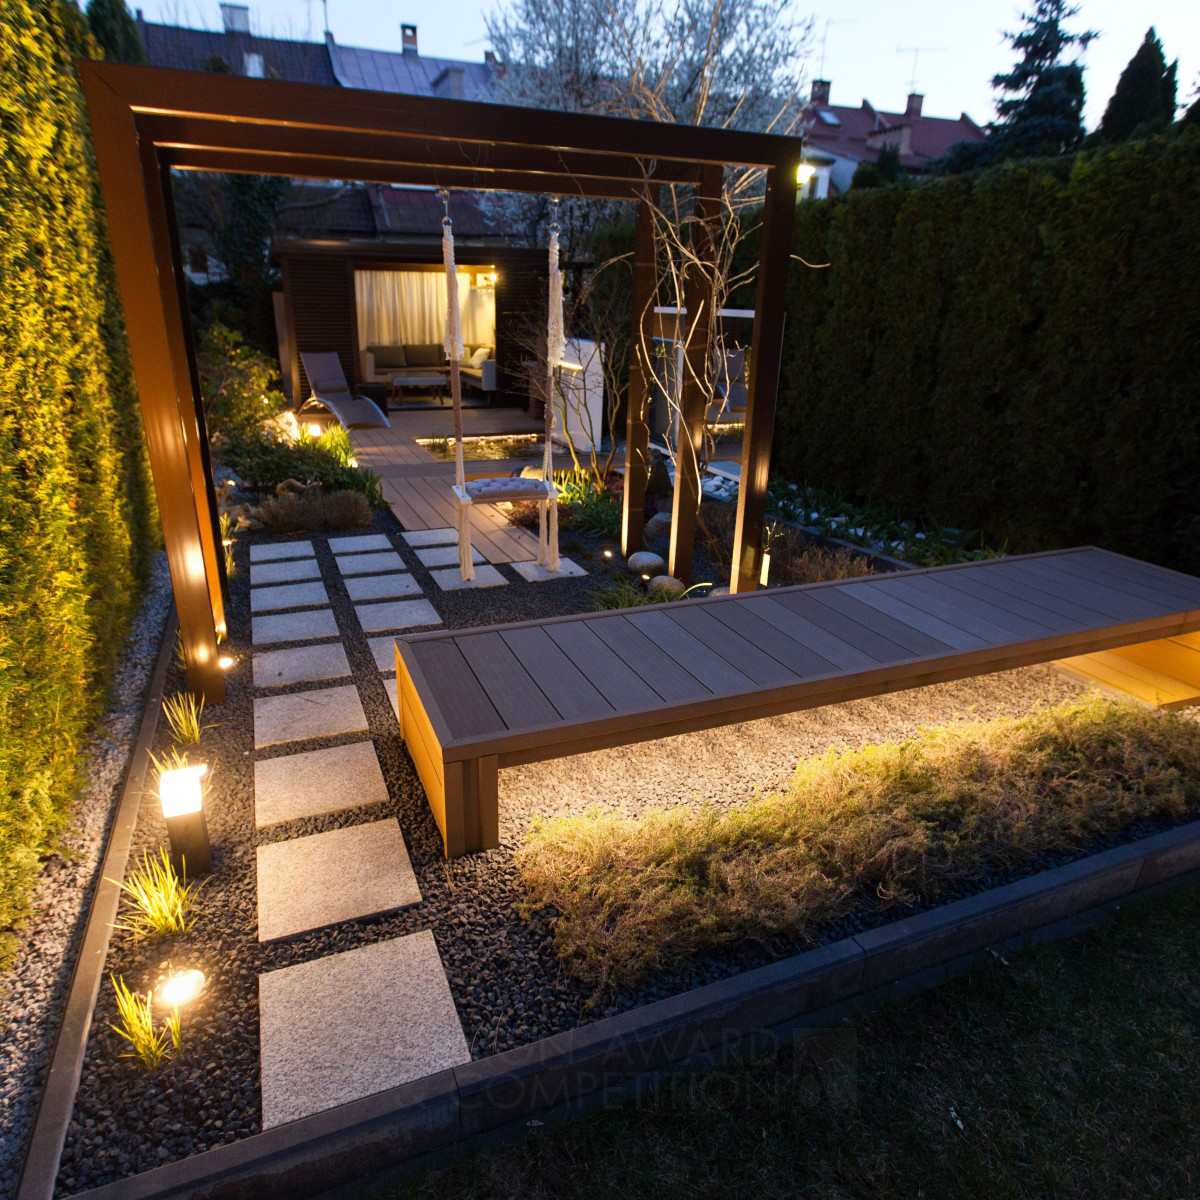 Modern Bir Bahçe Tasarımı: "Küçük Şehir"